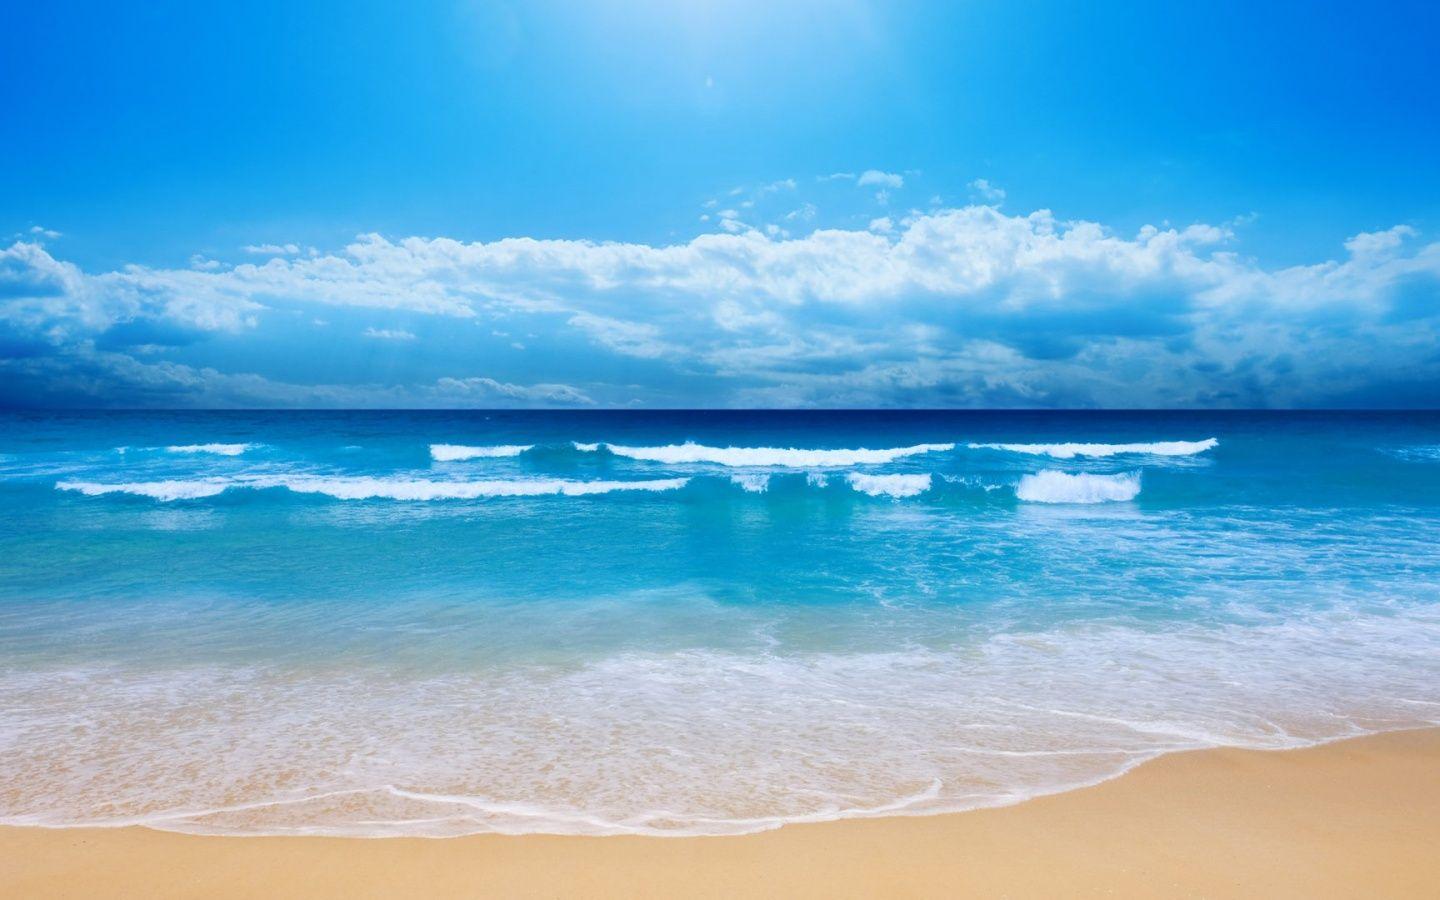 Biển mang đến cho chúng ta một sự yên tĩnh thật tuyệt vời. Hãy chọn hình nền biển đẹp để giúp bạn thư giãn và phát triển tâm trí với âm thanh sóng vỗ và khung cảnh đảo xa.